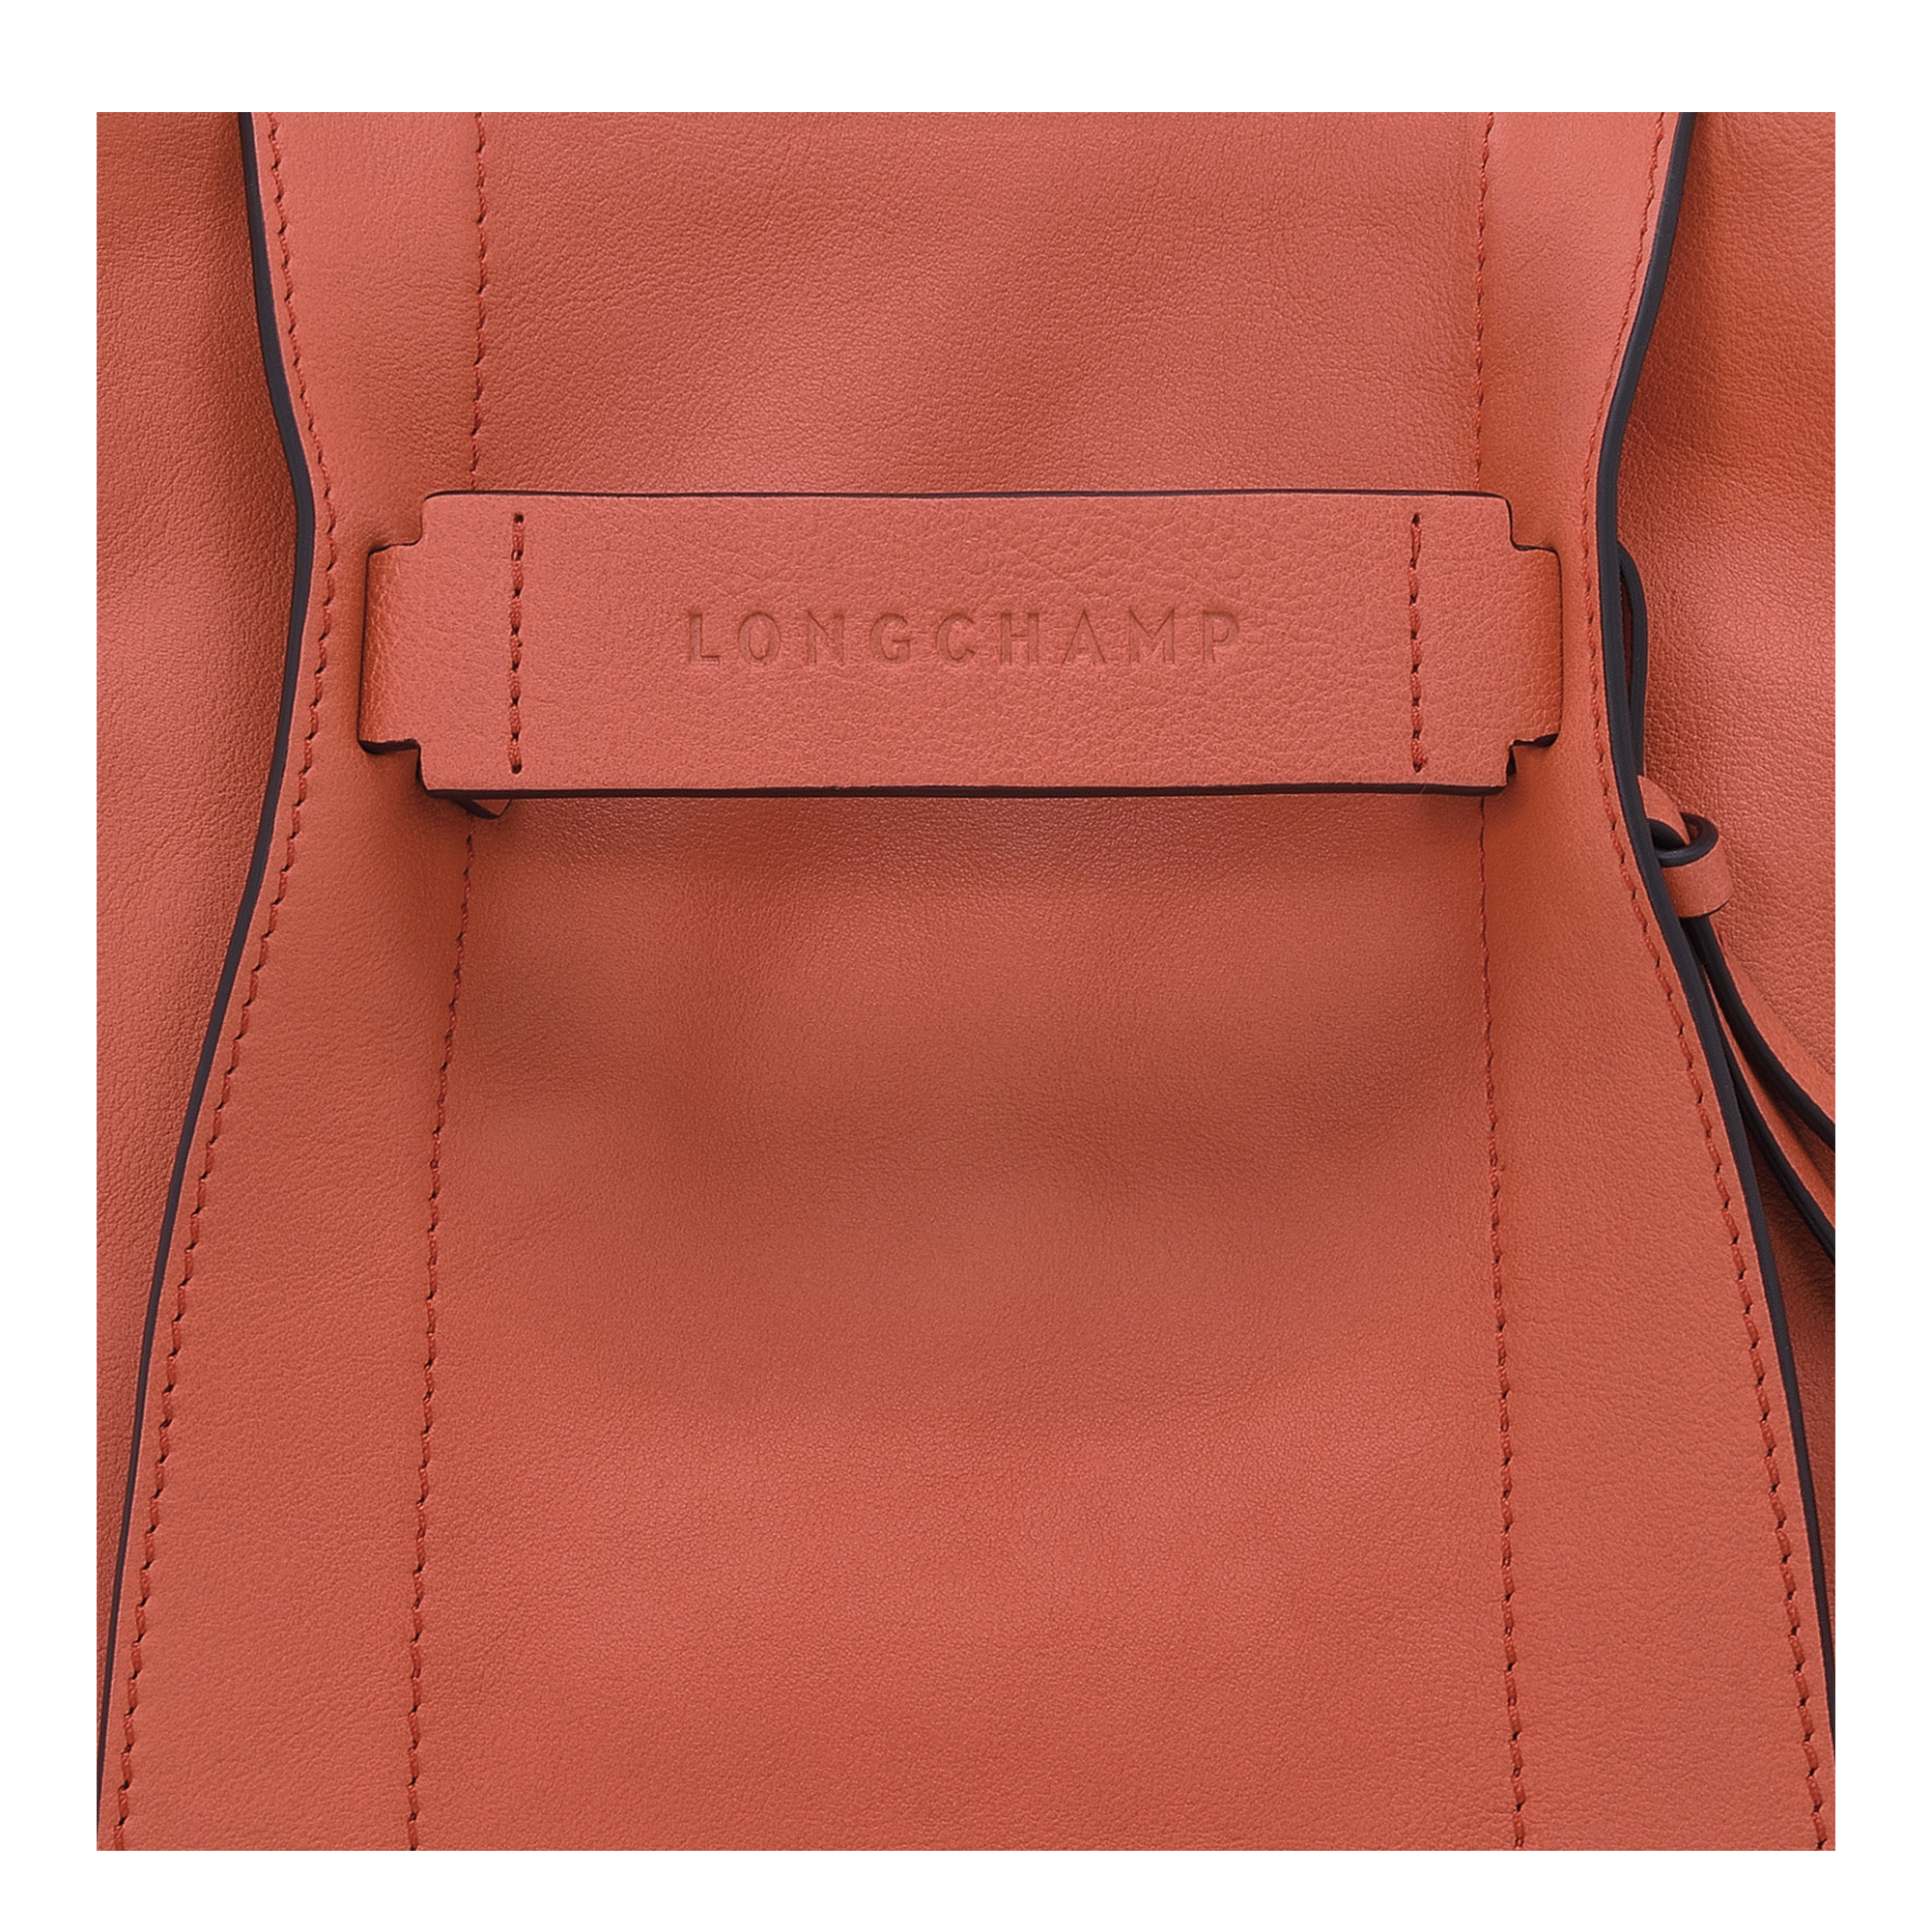 Longchamp 3D Sac bandoulière S, Sienne